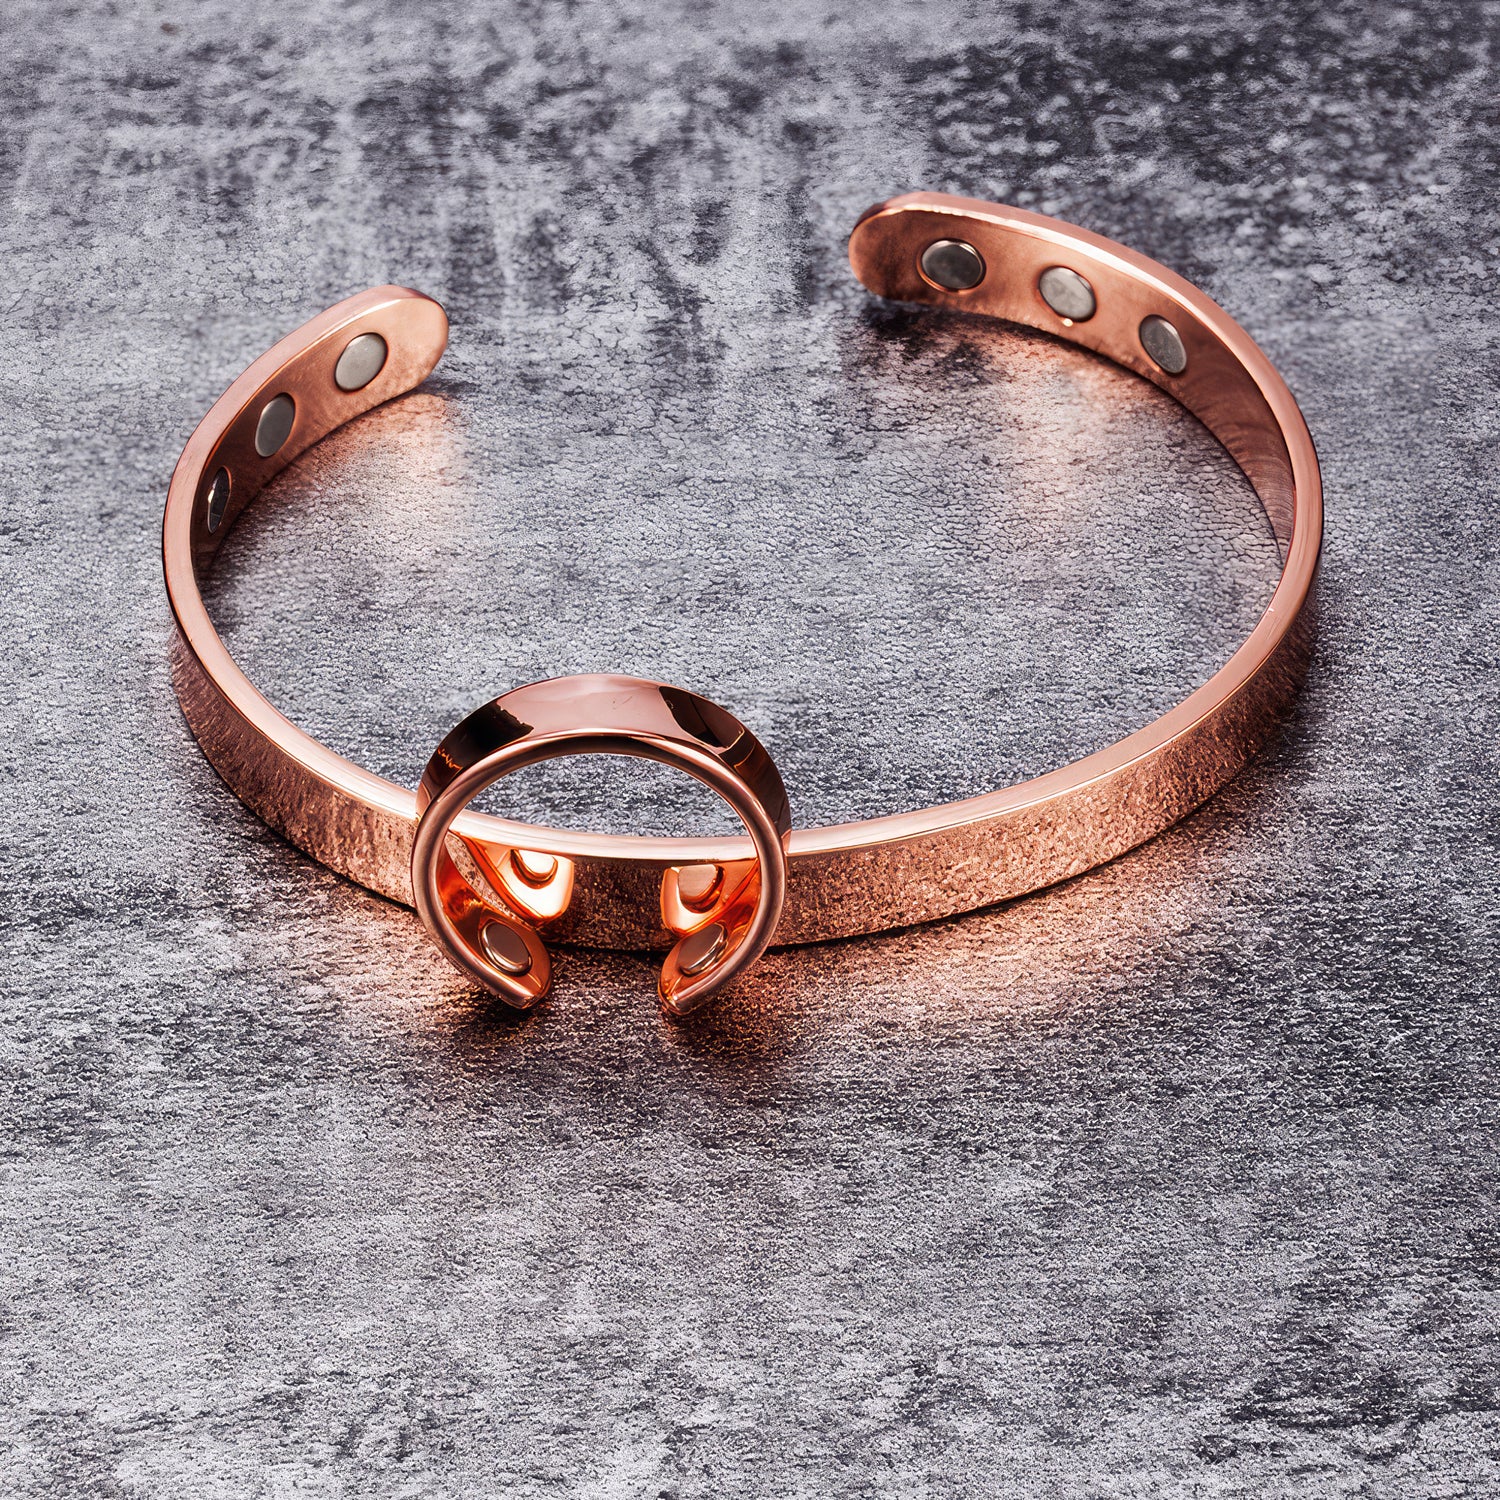 Minimalist 99% Pure Copper Bangle & Ring